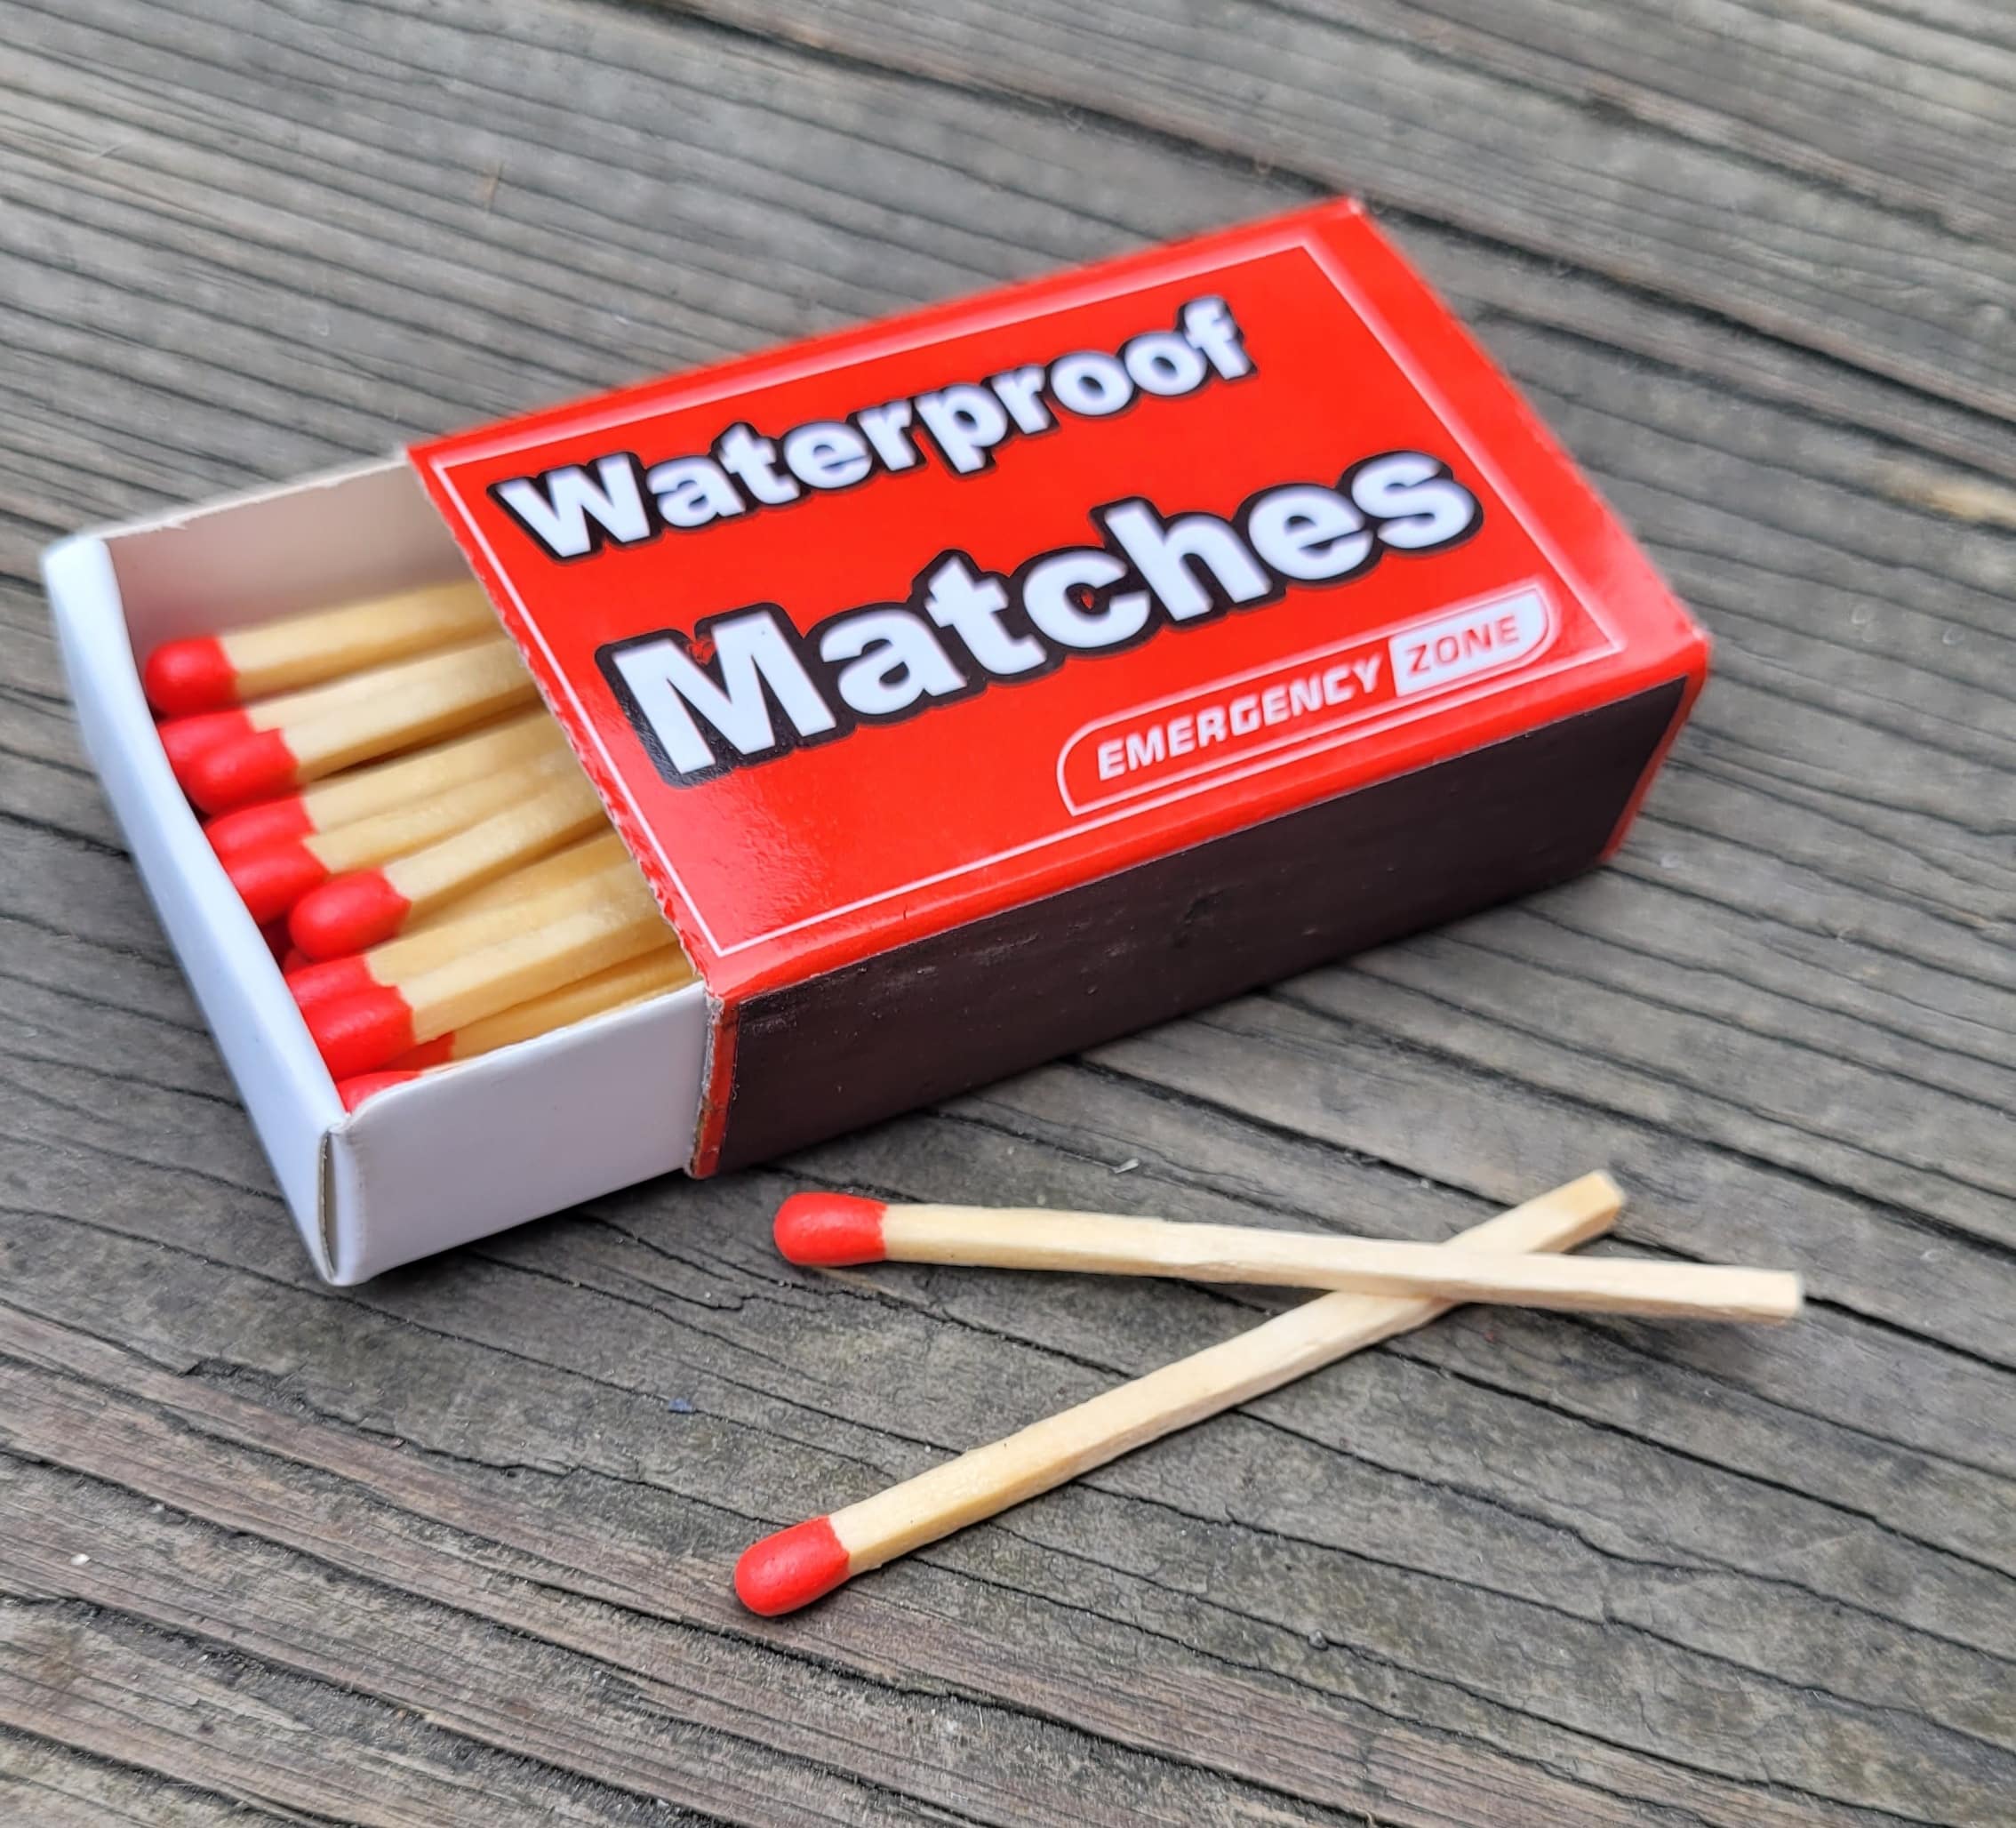 Waterproof Your Matches • British Columbia Magazine